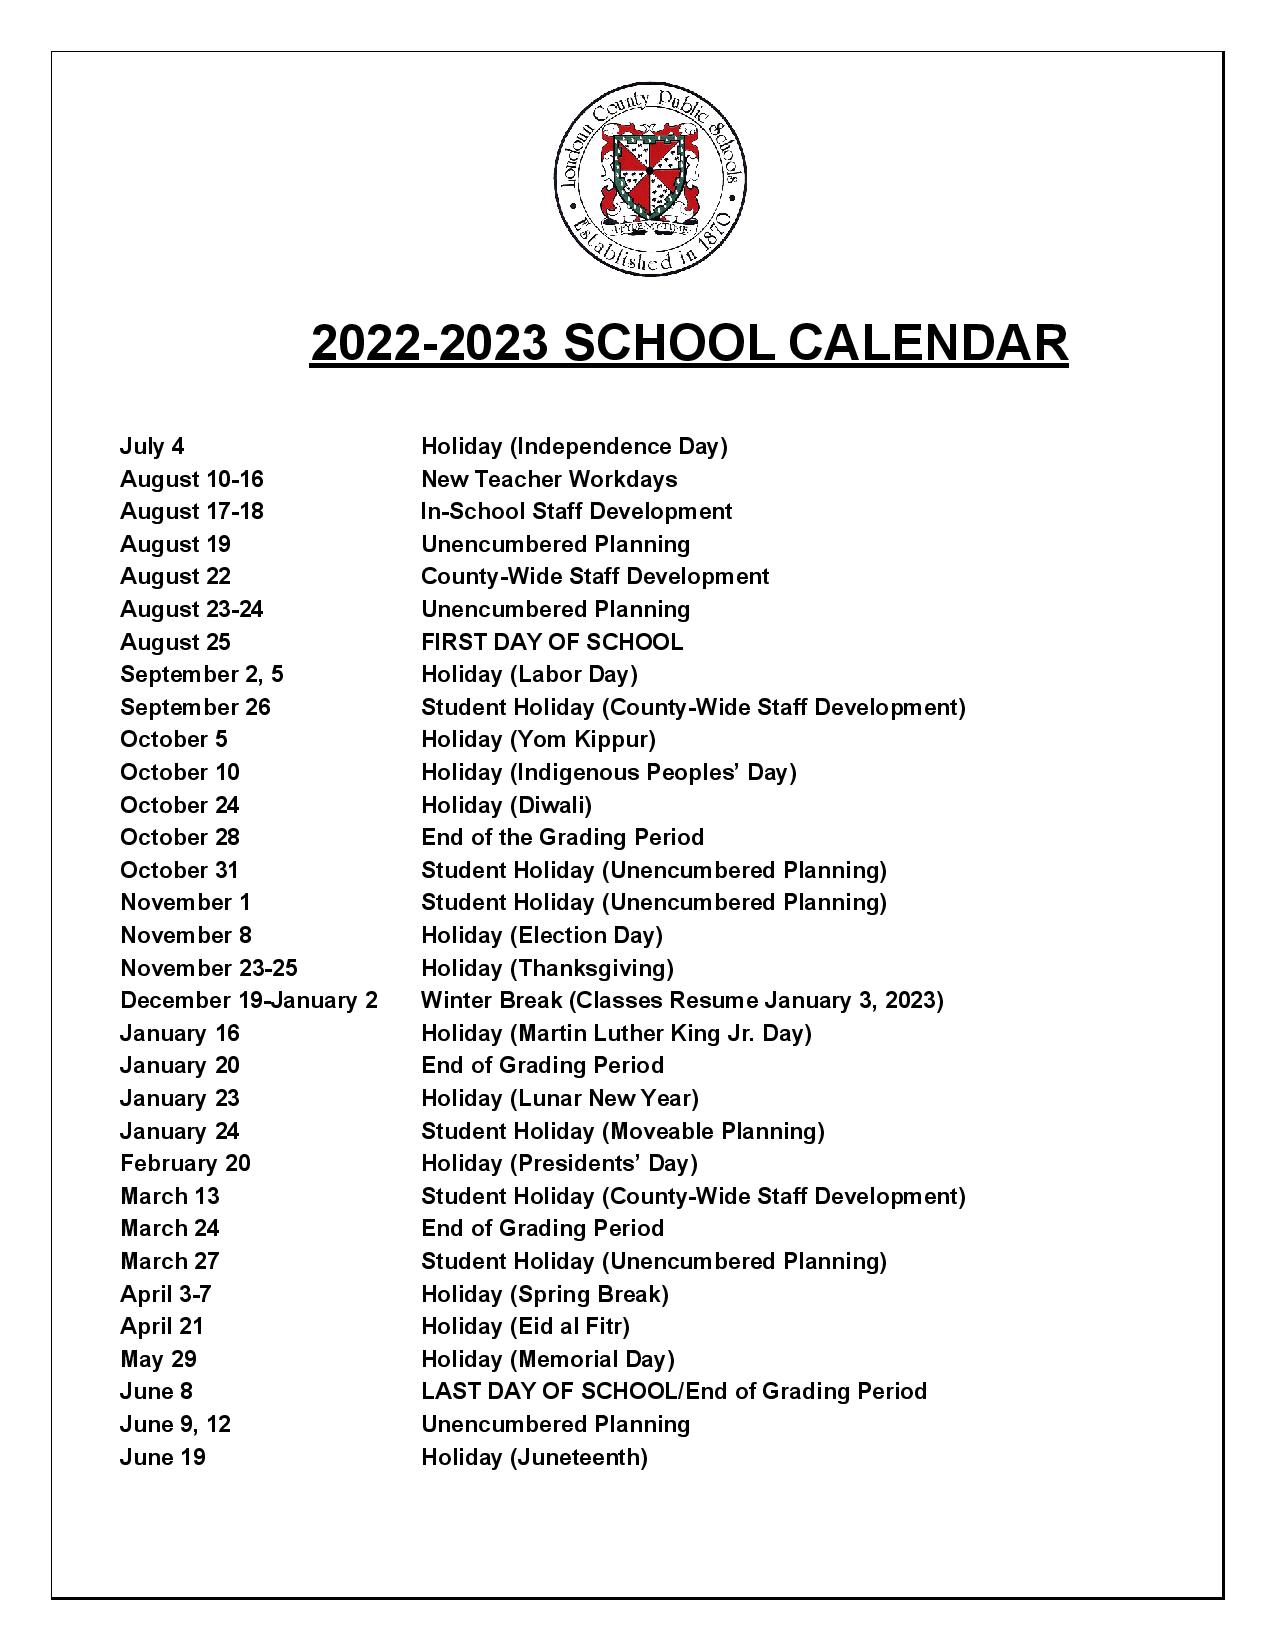 2025 And 2026 School Calendar Loudoun County